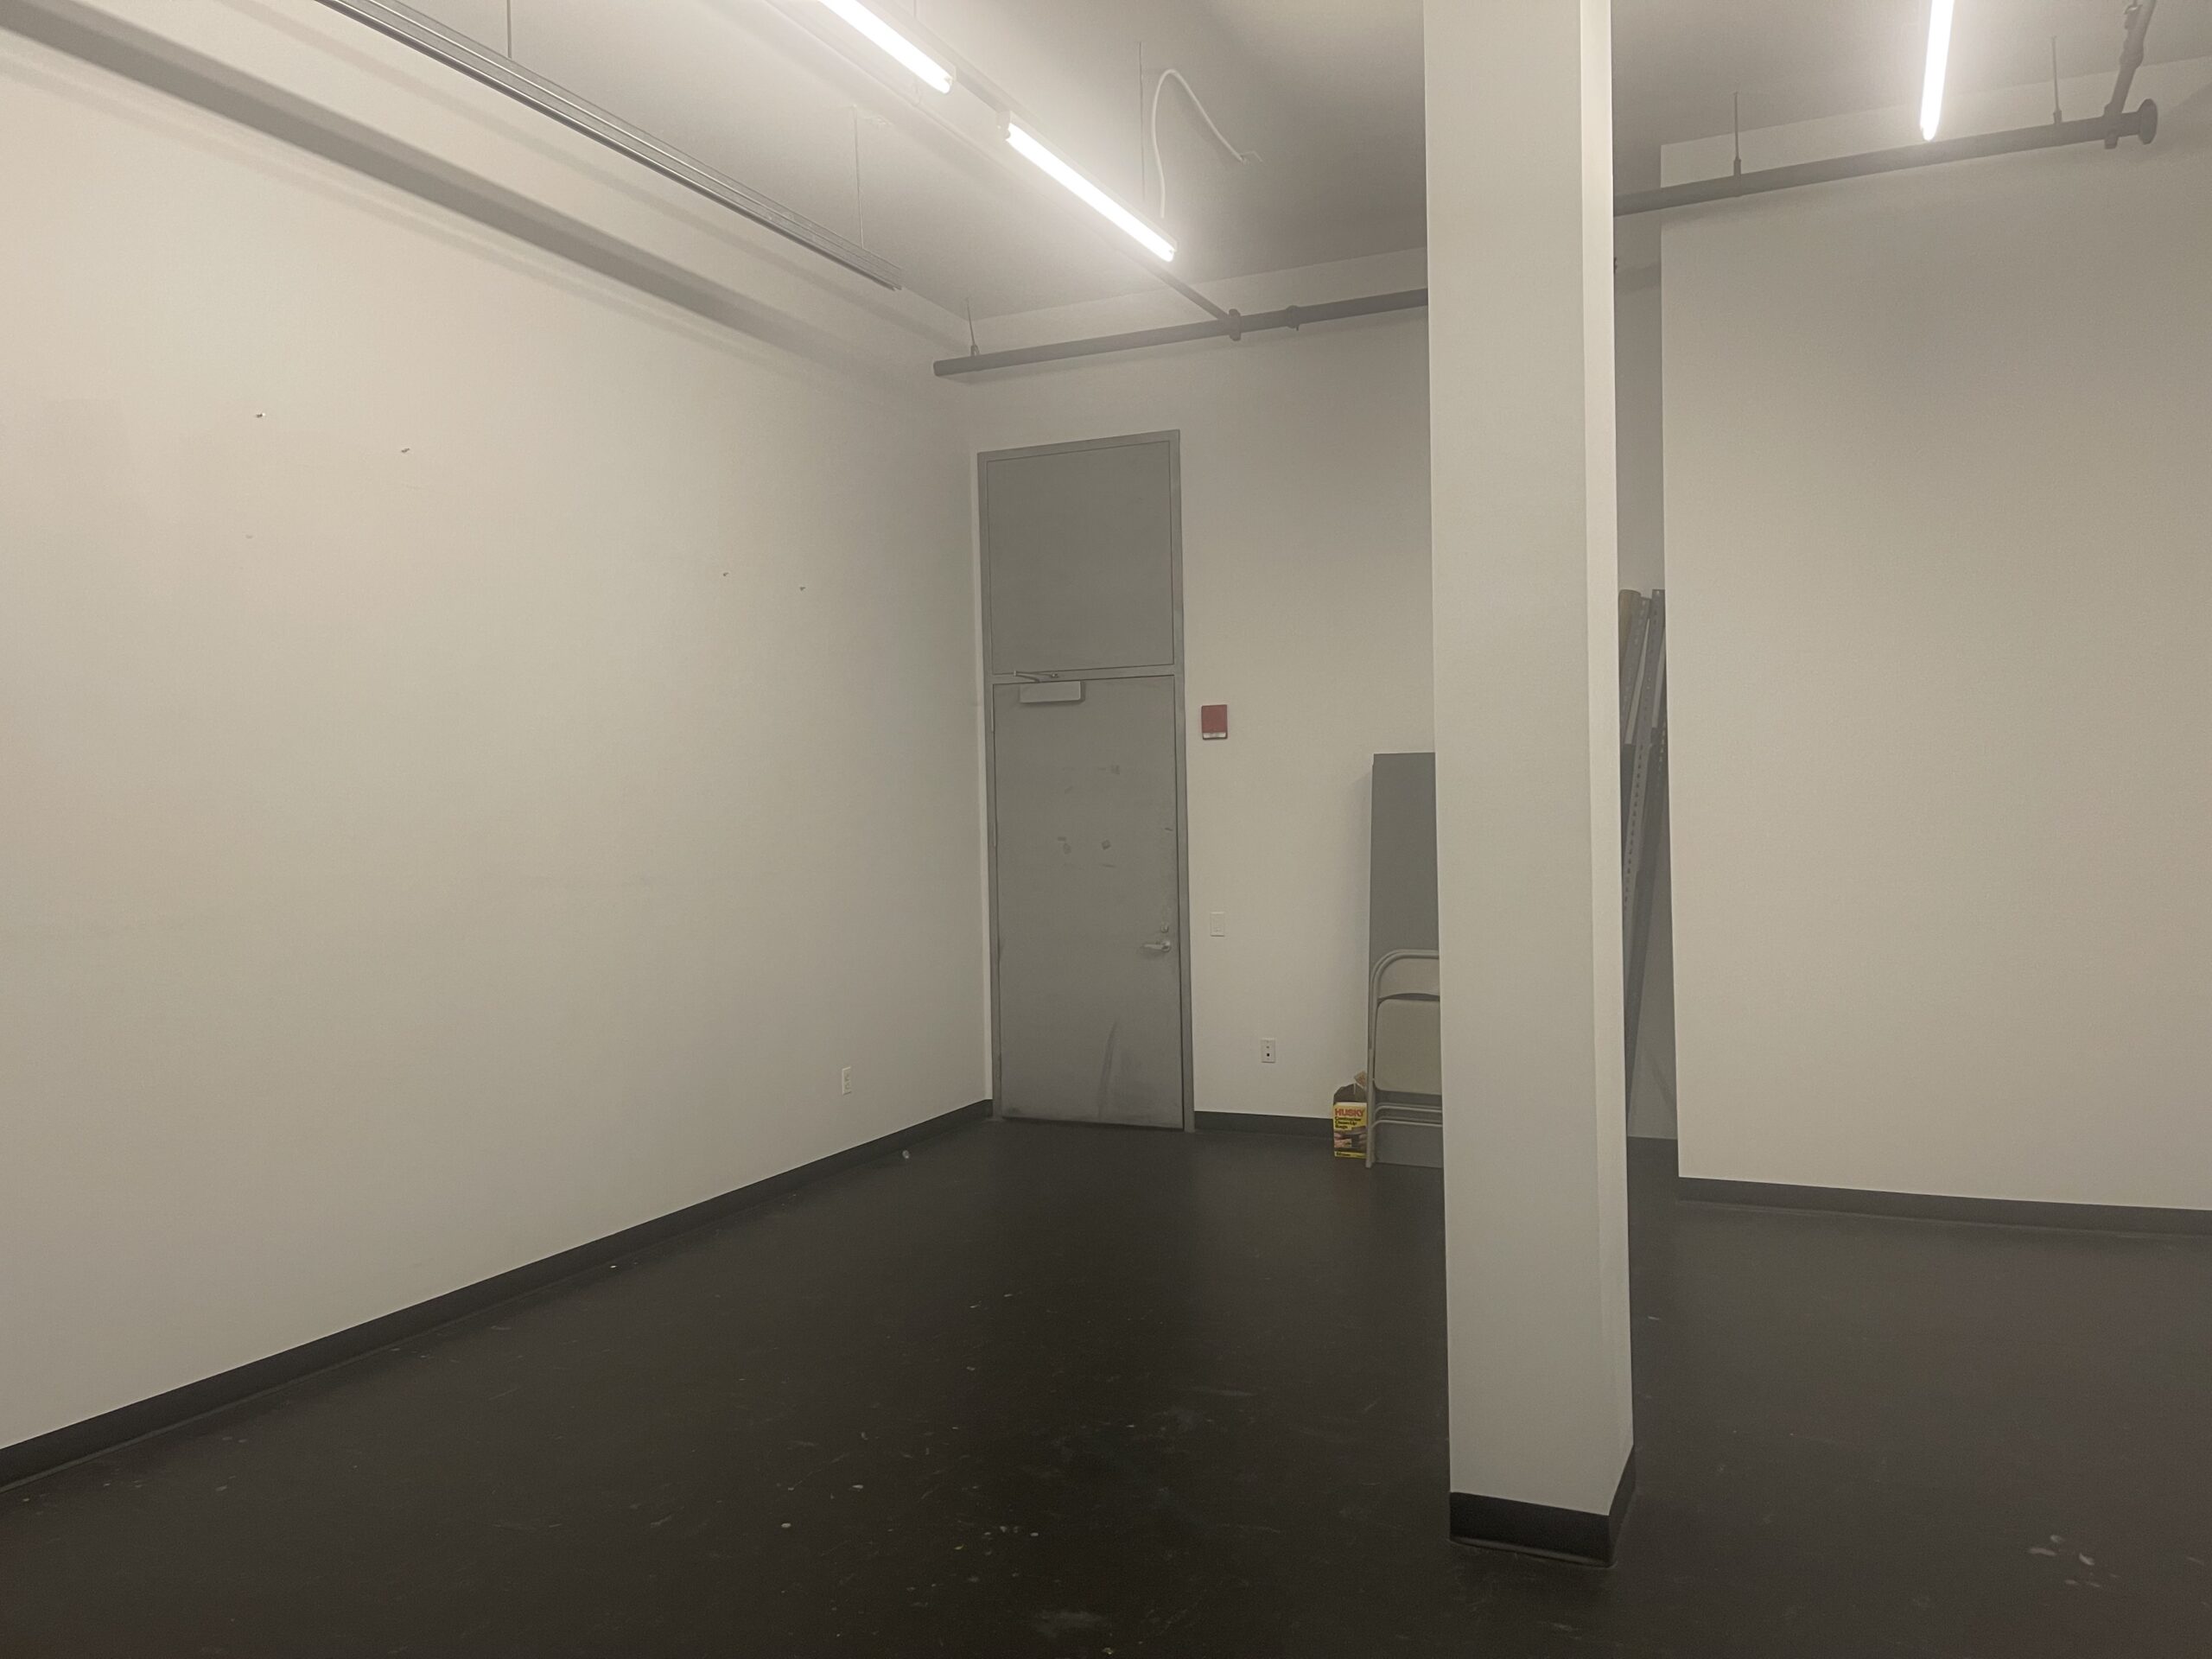 ps122 Gallery Studio